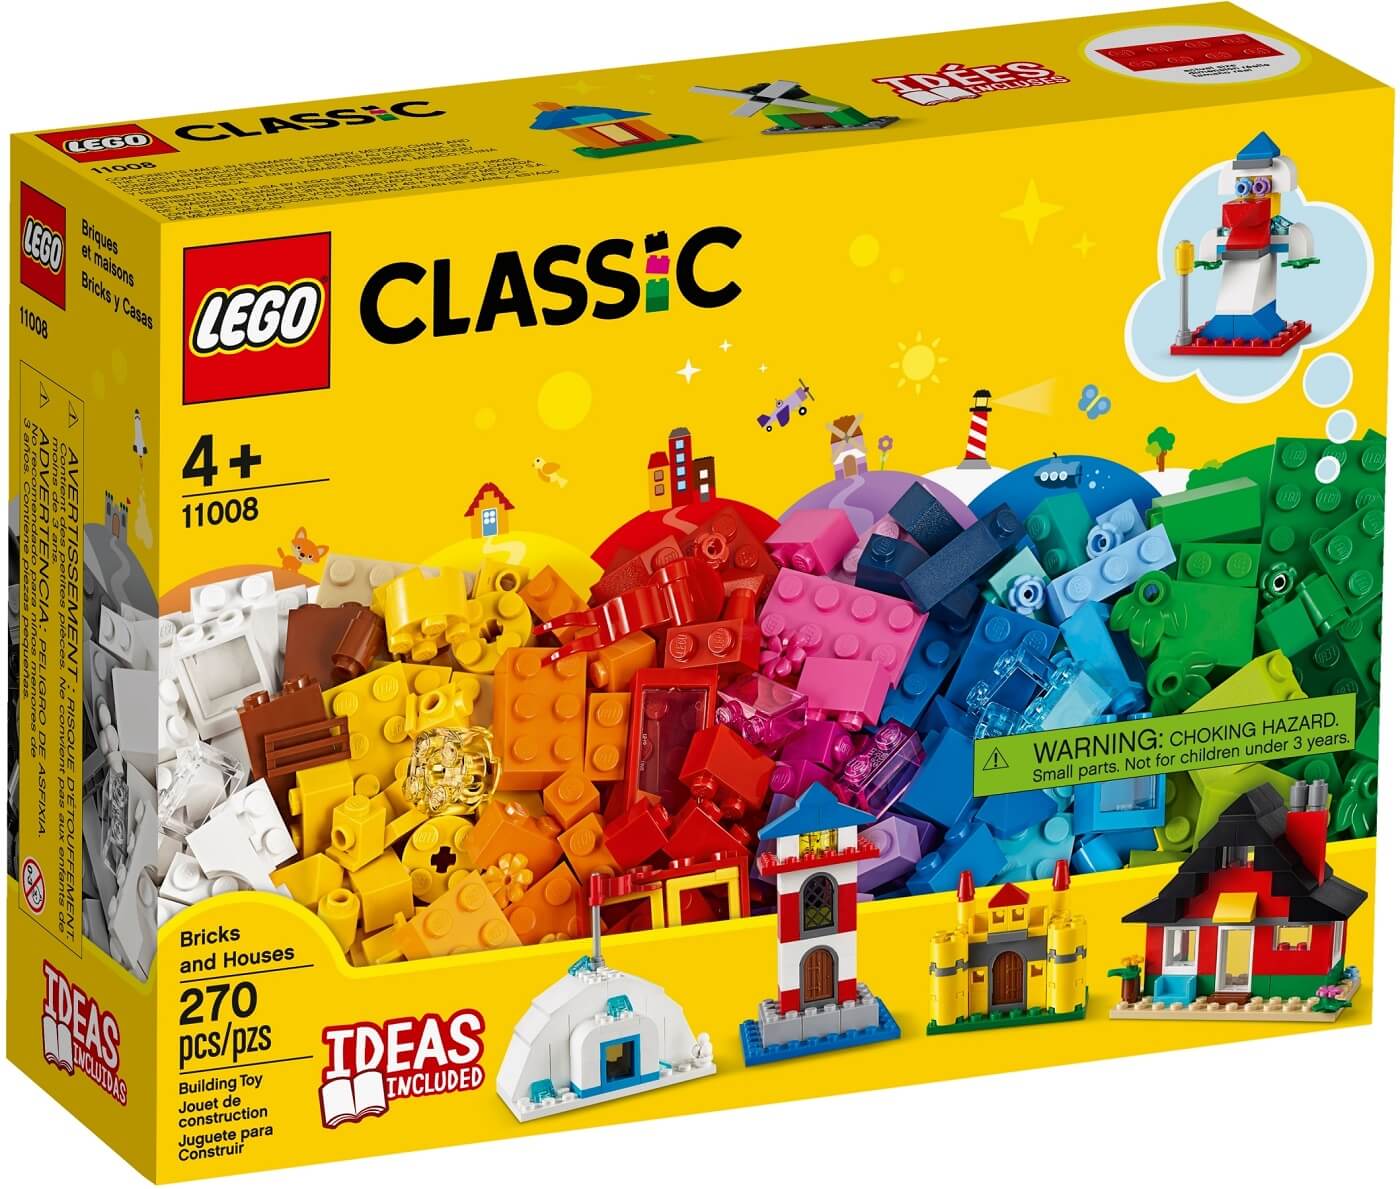 Ladrillos y Casas ( Lego 11008 ) imagen e